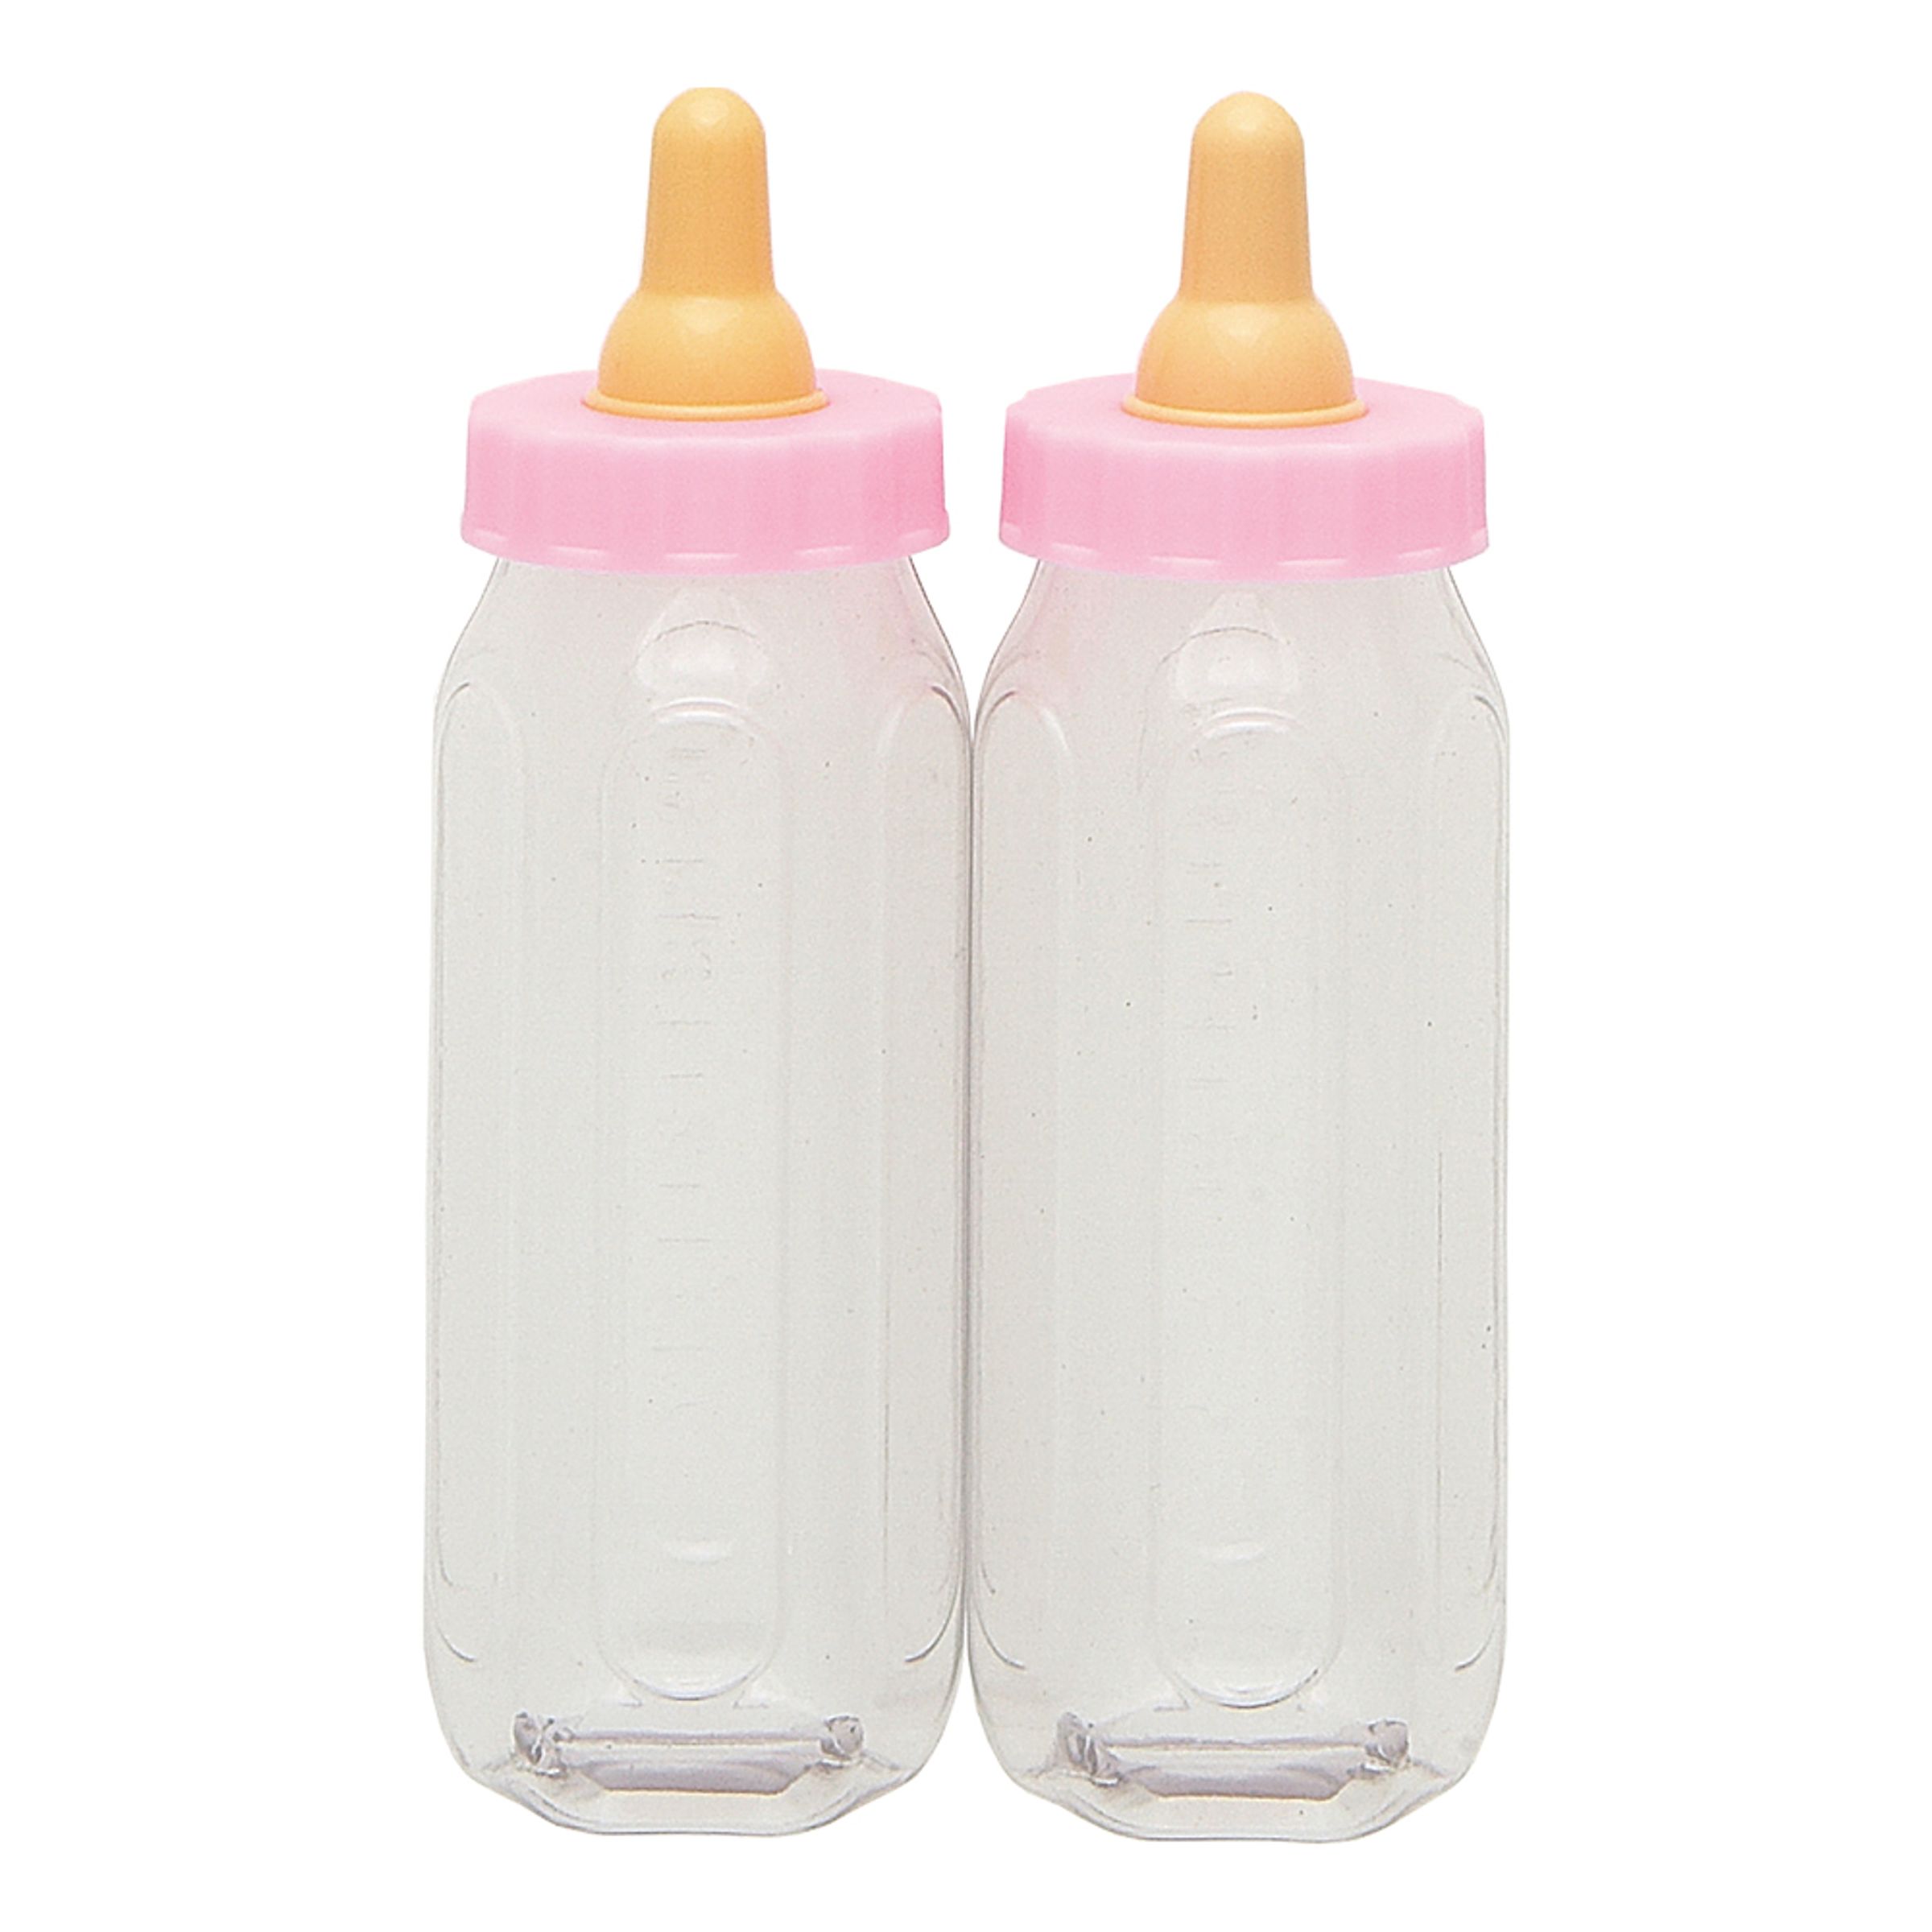 Nappflaskor Ljusrosa Babyshower - 2-pack